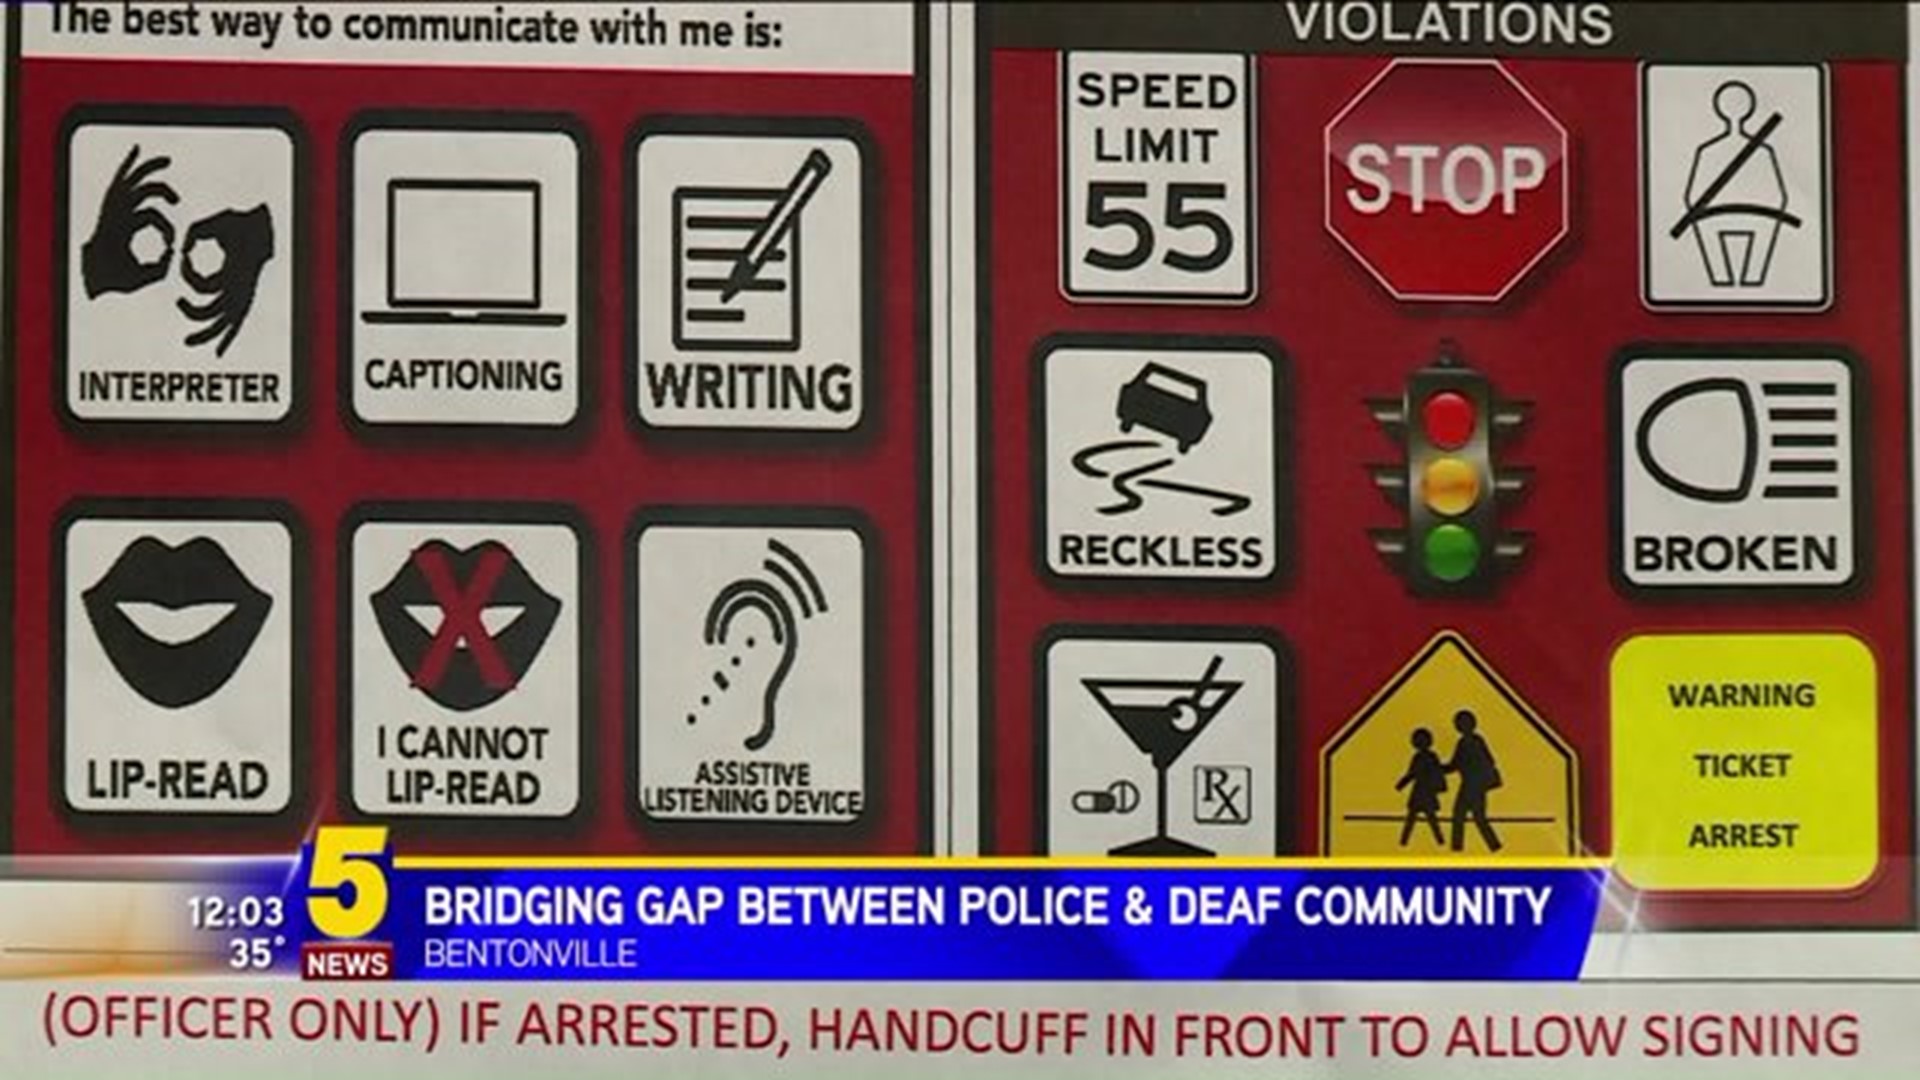 Bridging Gap Between Police & Deaf Community